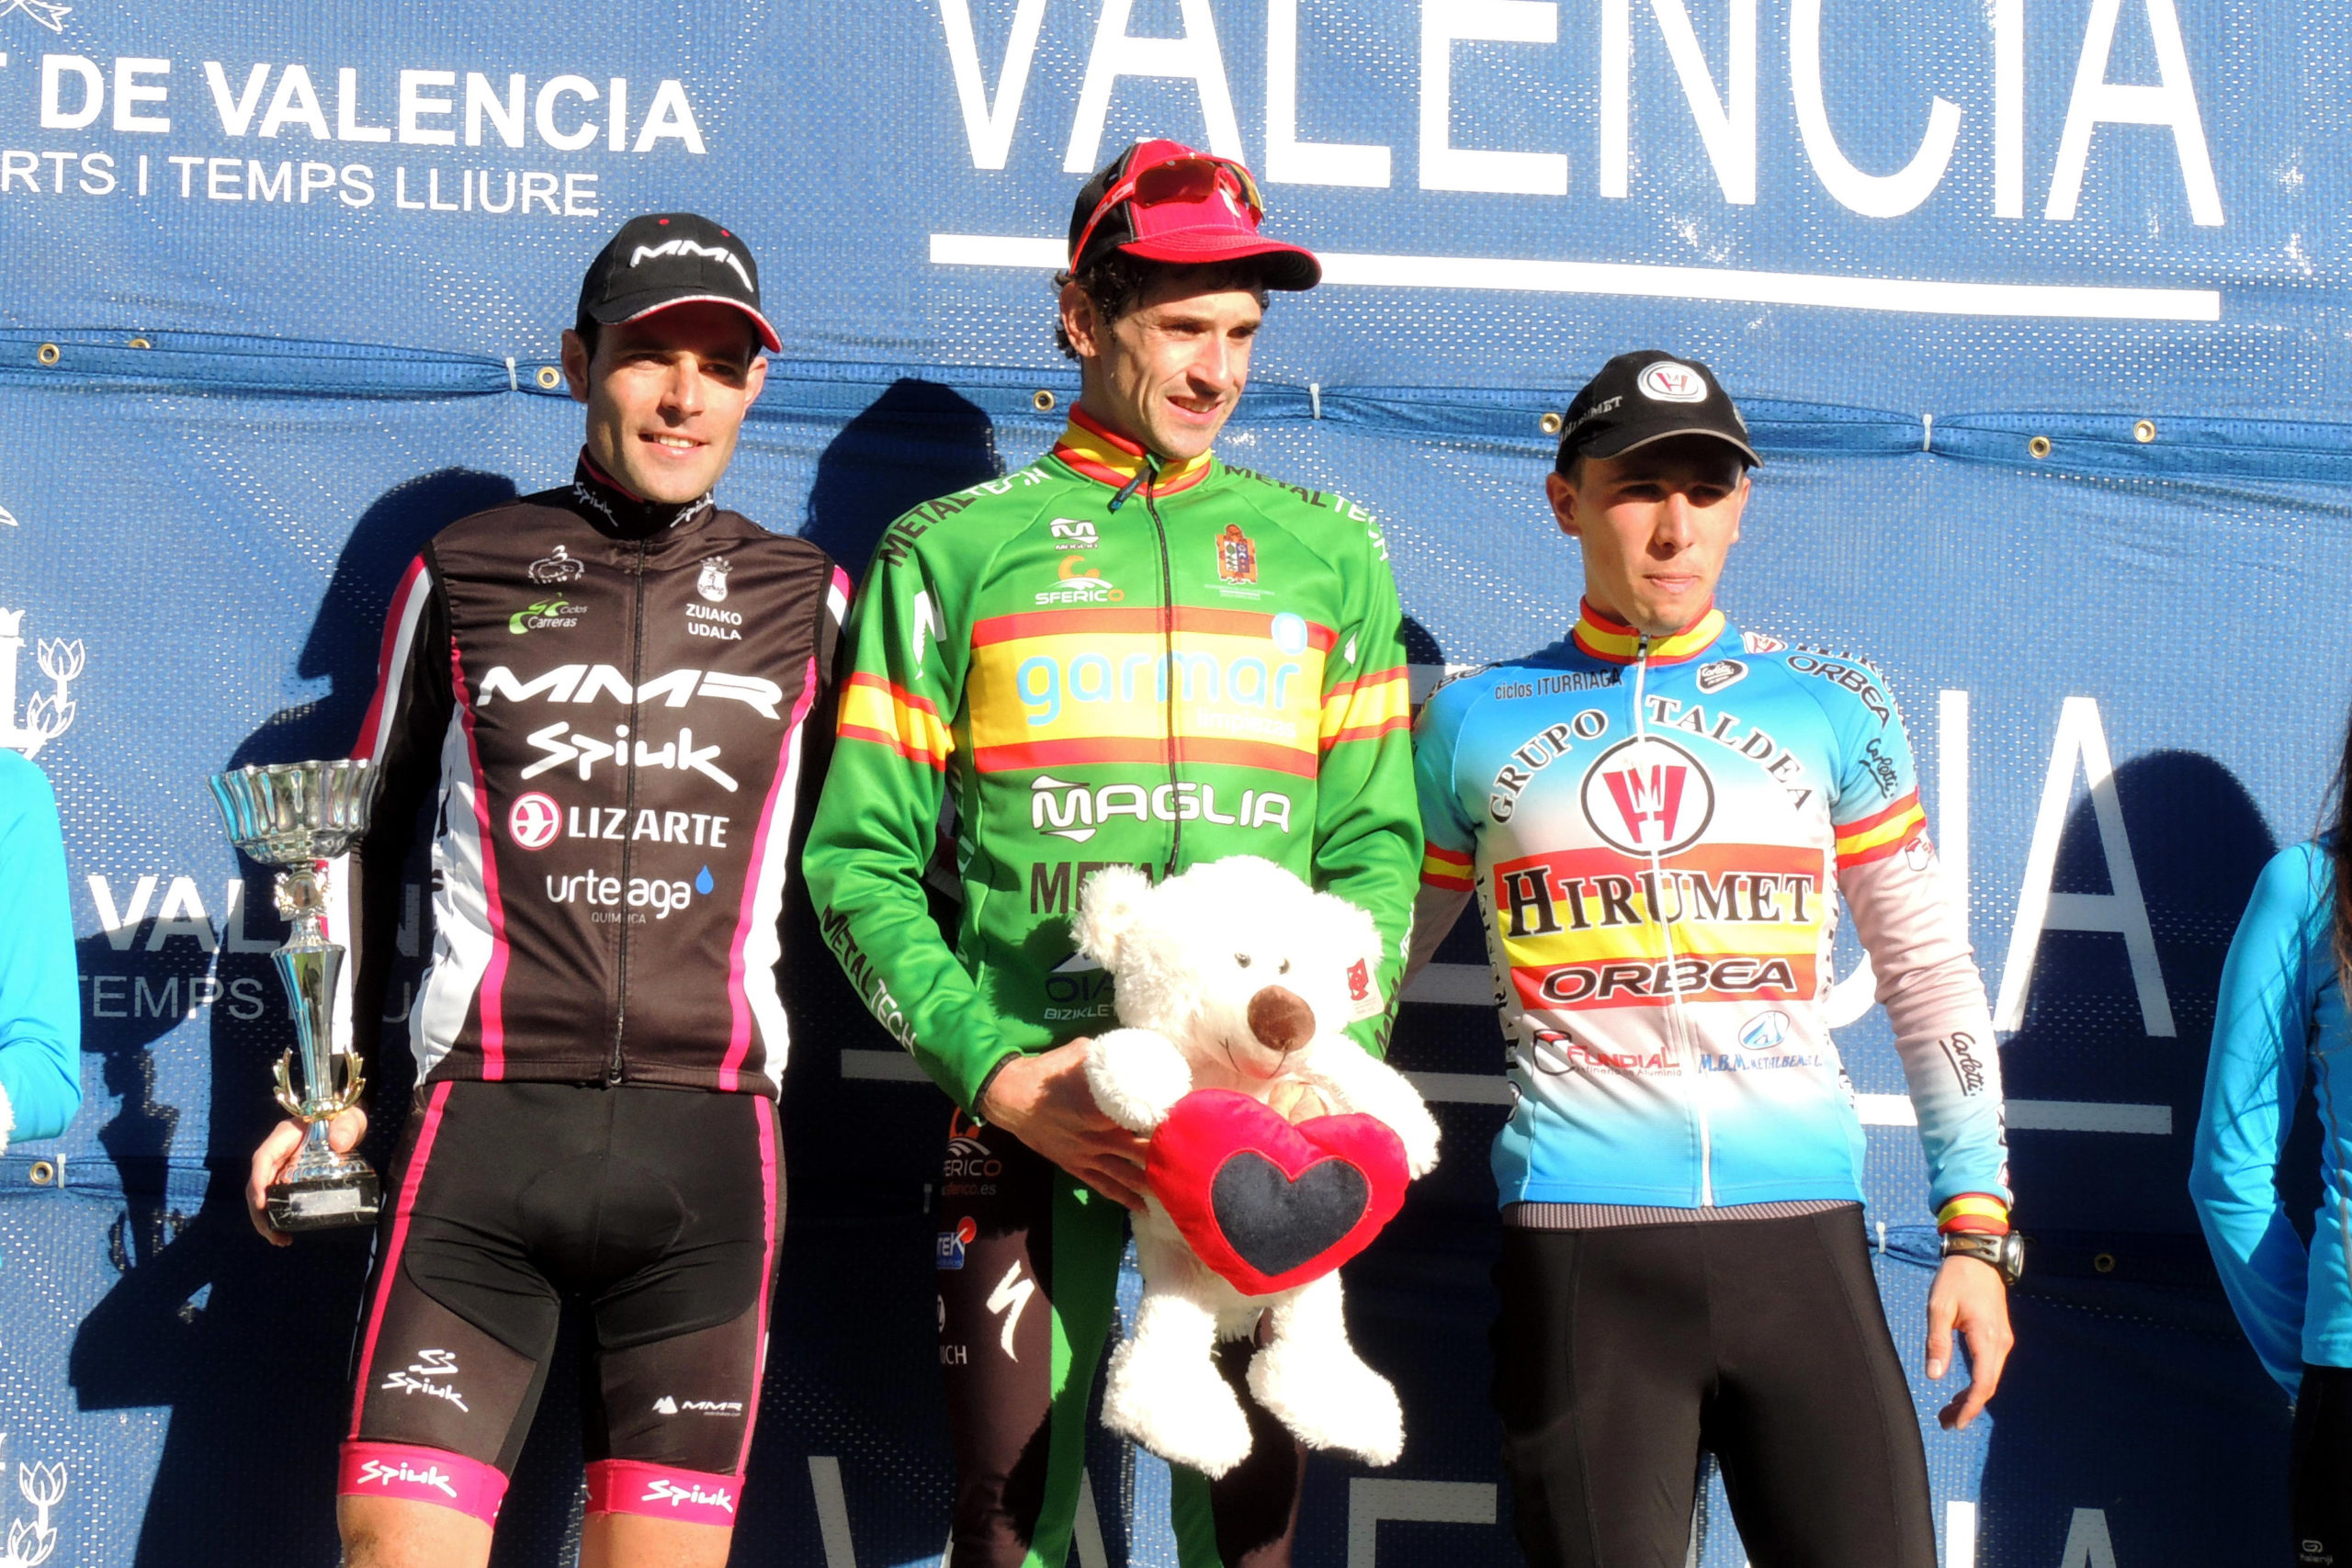 Aitor, el ciclista patrocinado por noVadiet, en el podio de Valencia